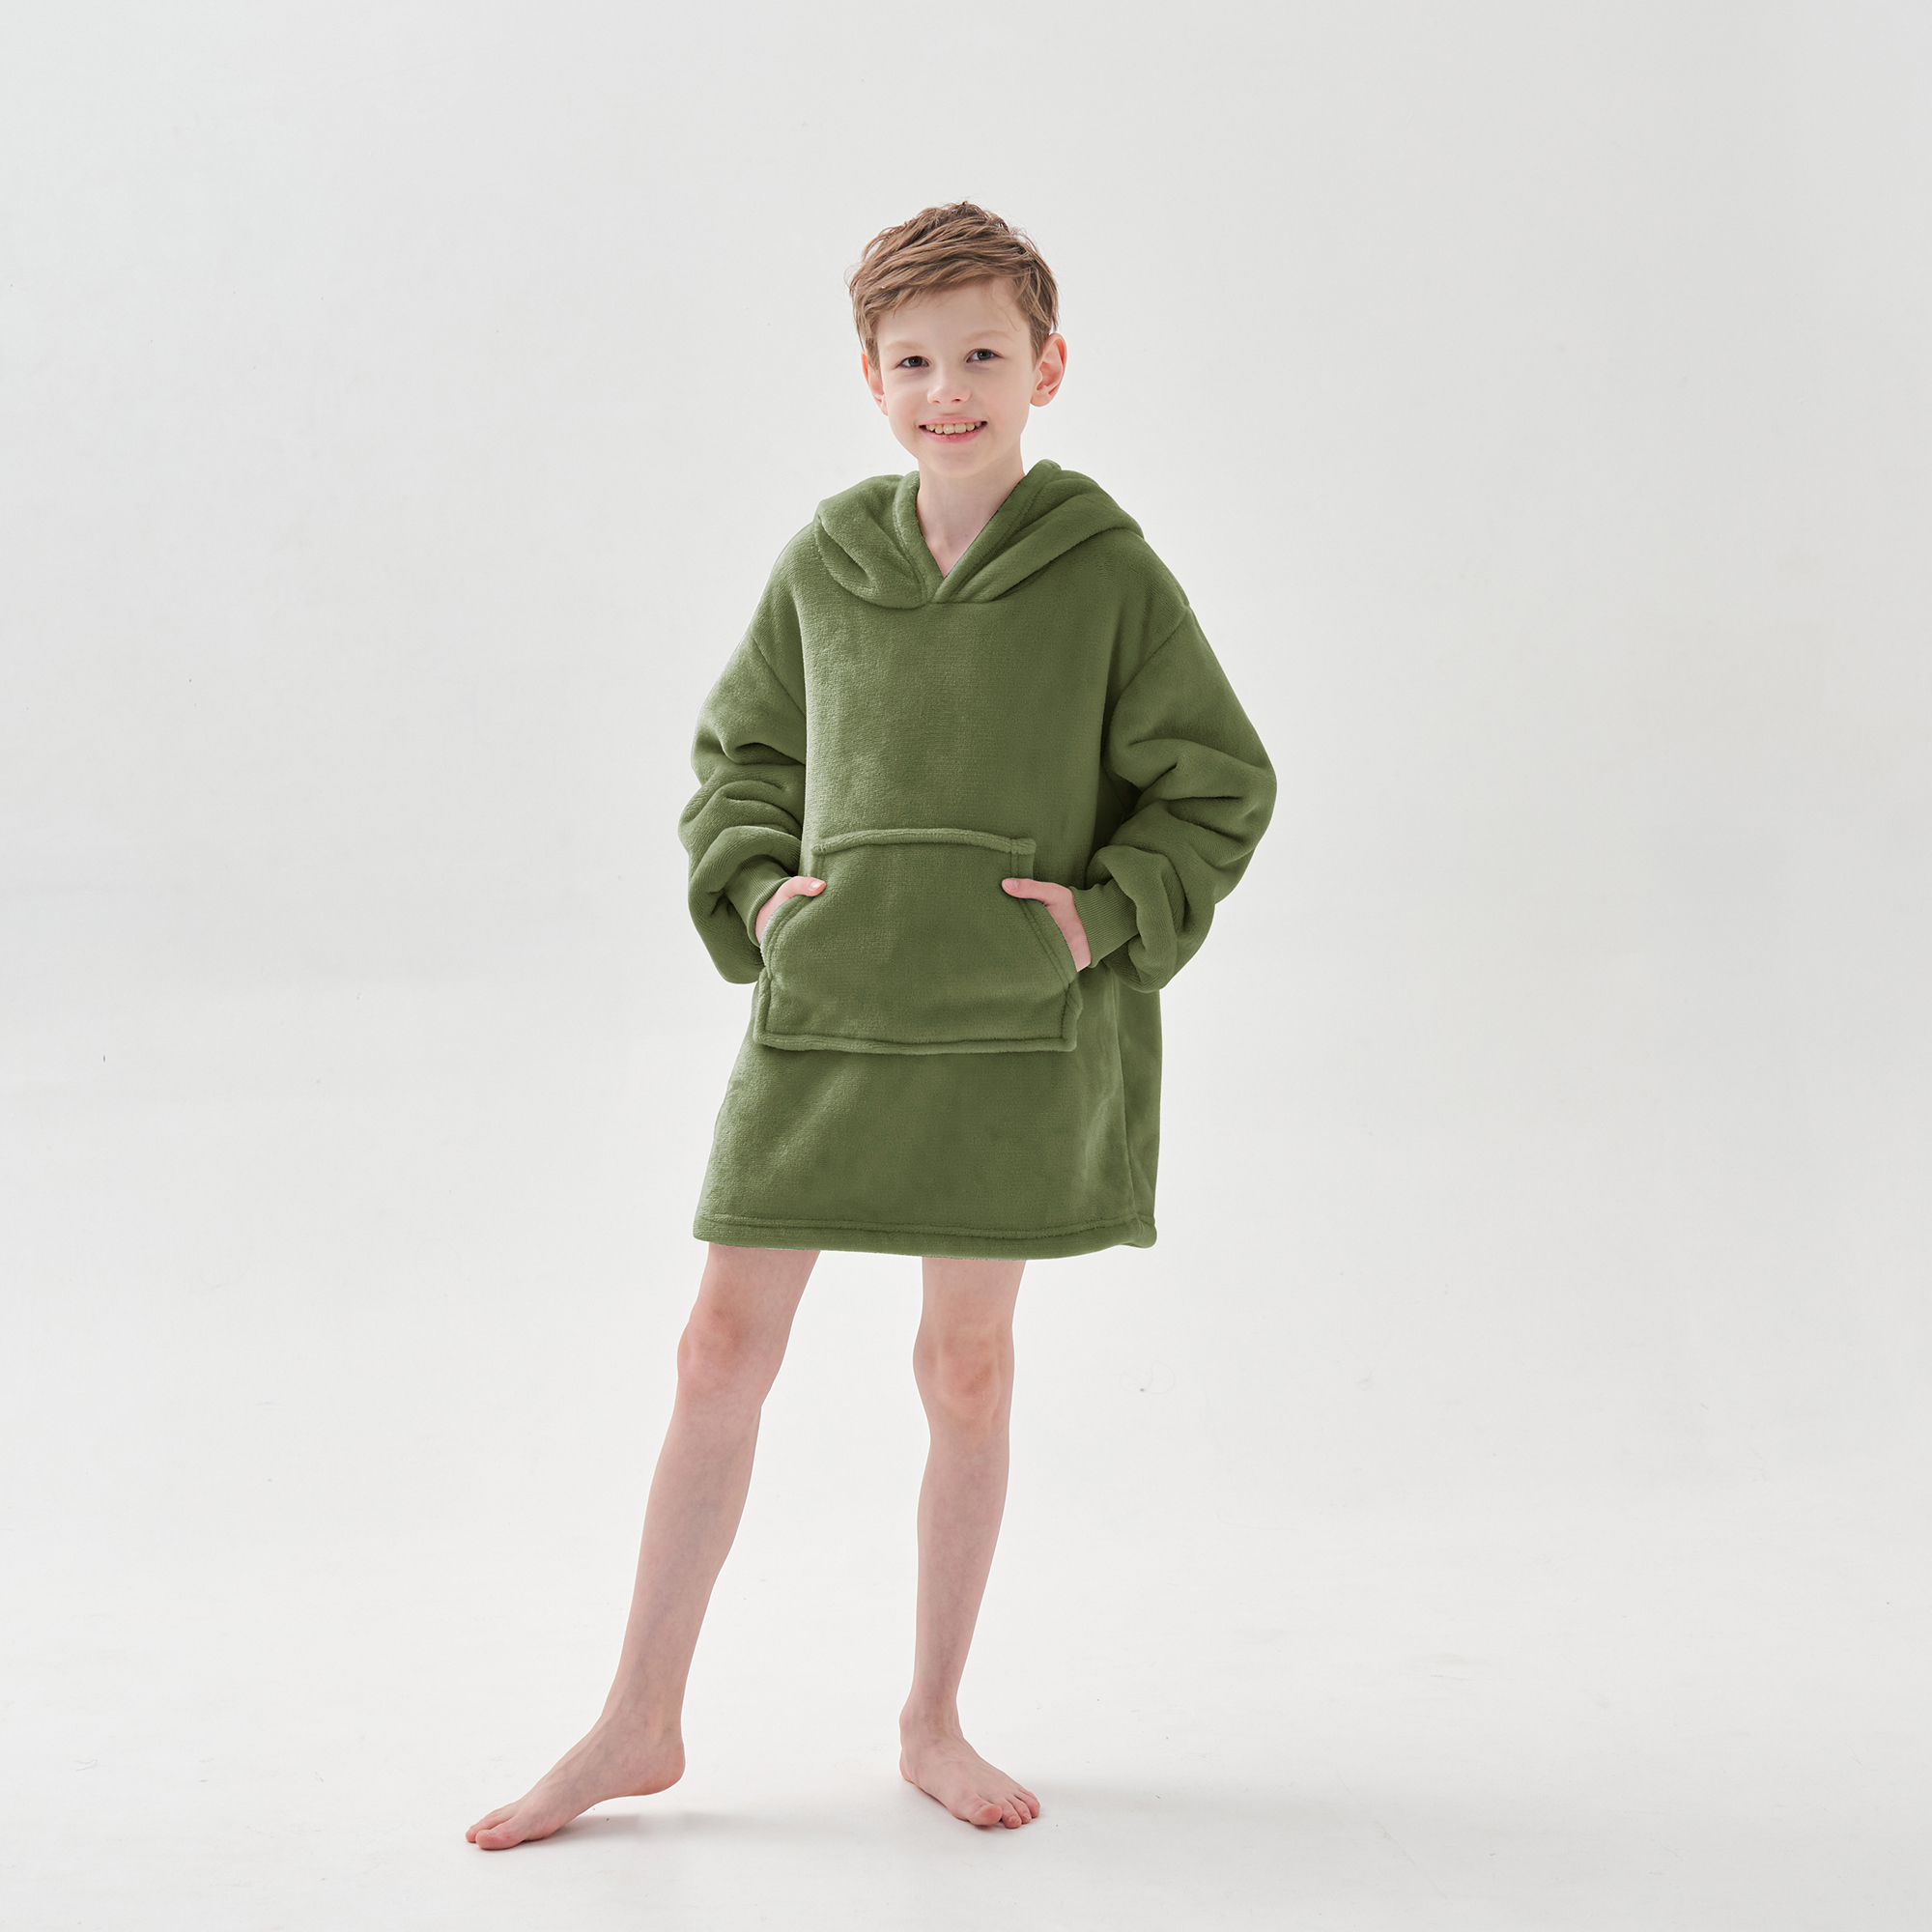 JUNIOR Oversized Hoodie voor kinderen - 50x70 cm - Hoodie & deken in één - met capuchon - Groen